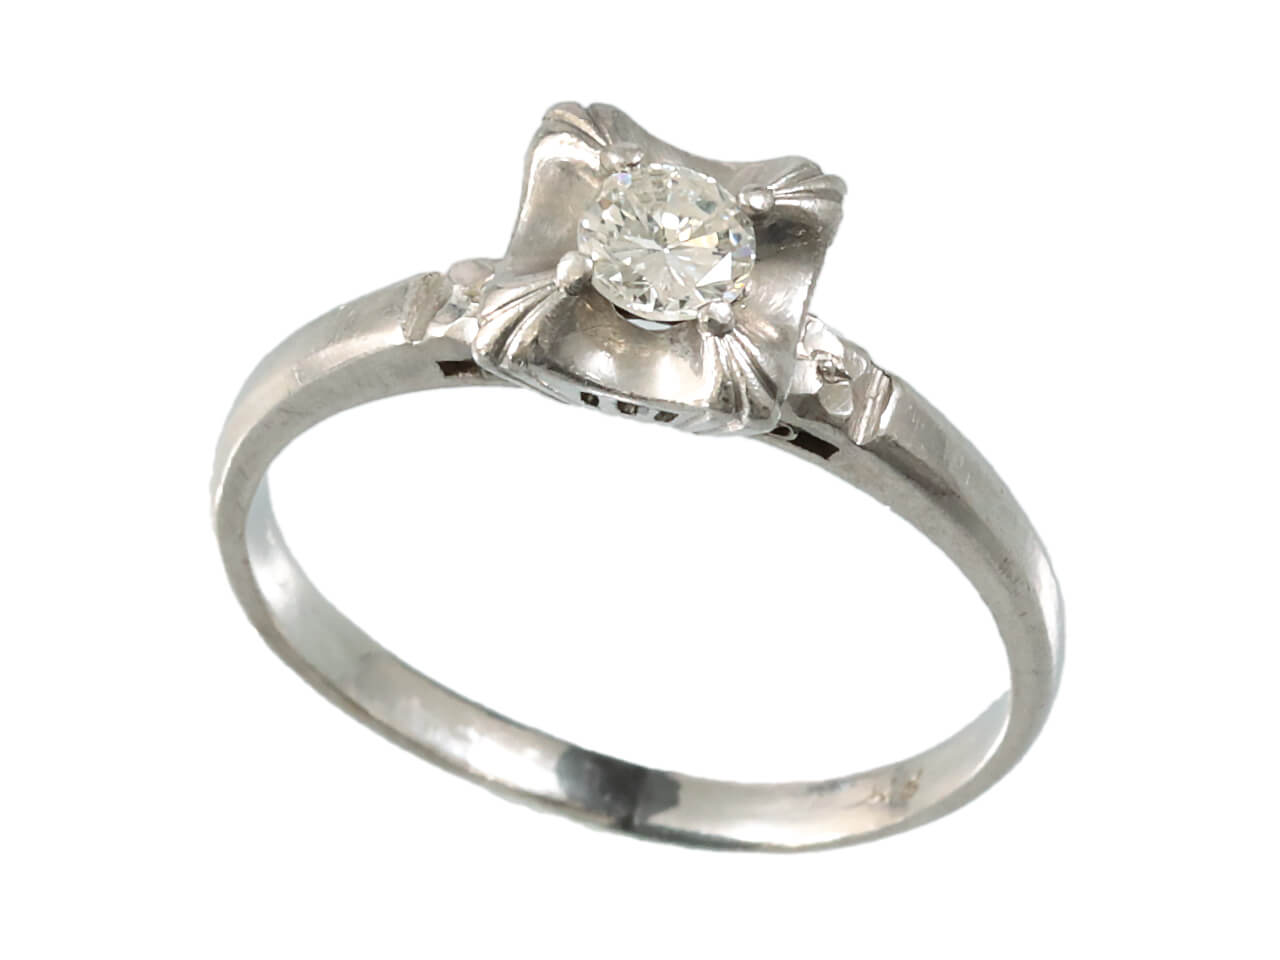 祖母の婚約指輪に留まっているダイヤモンドをピアスにリフォーム